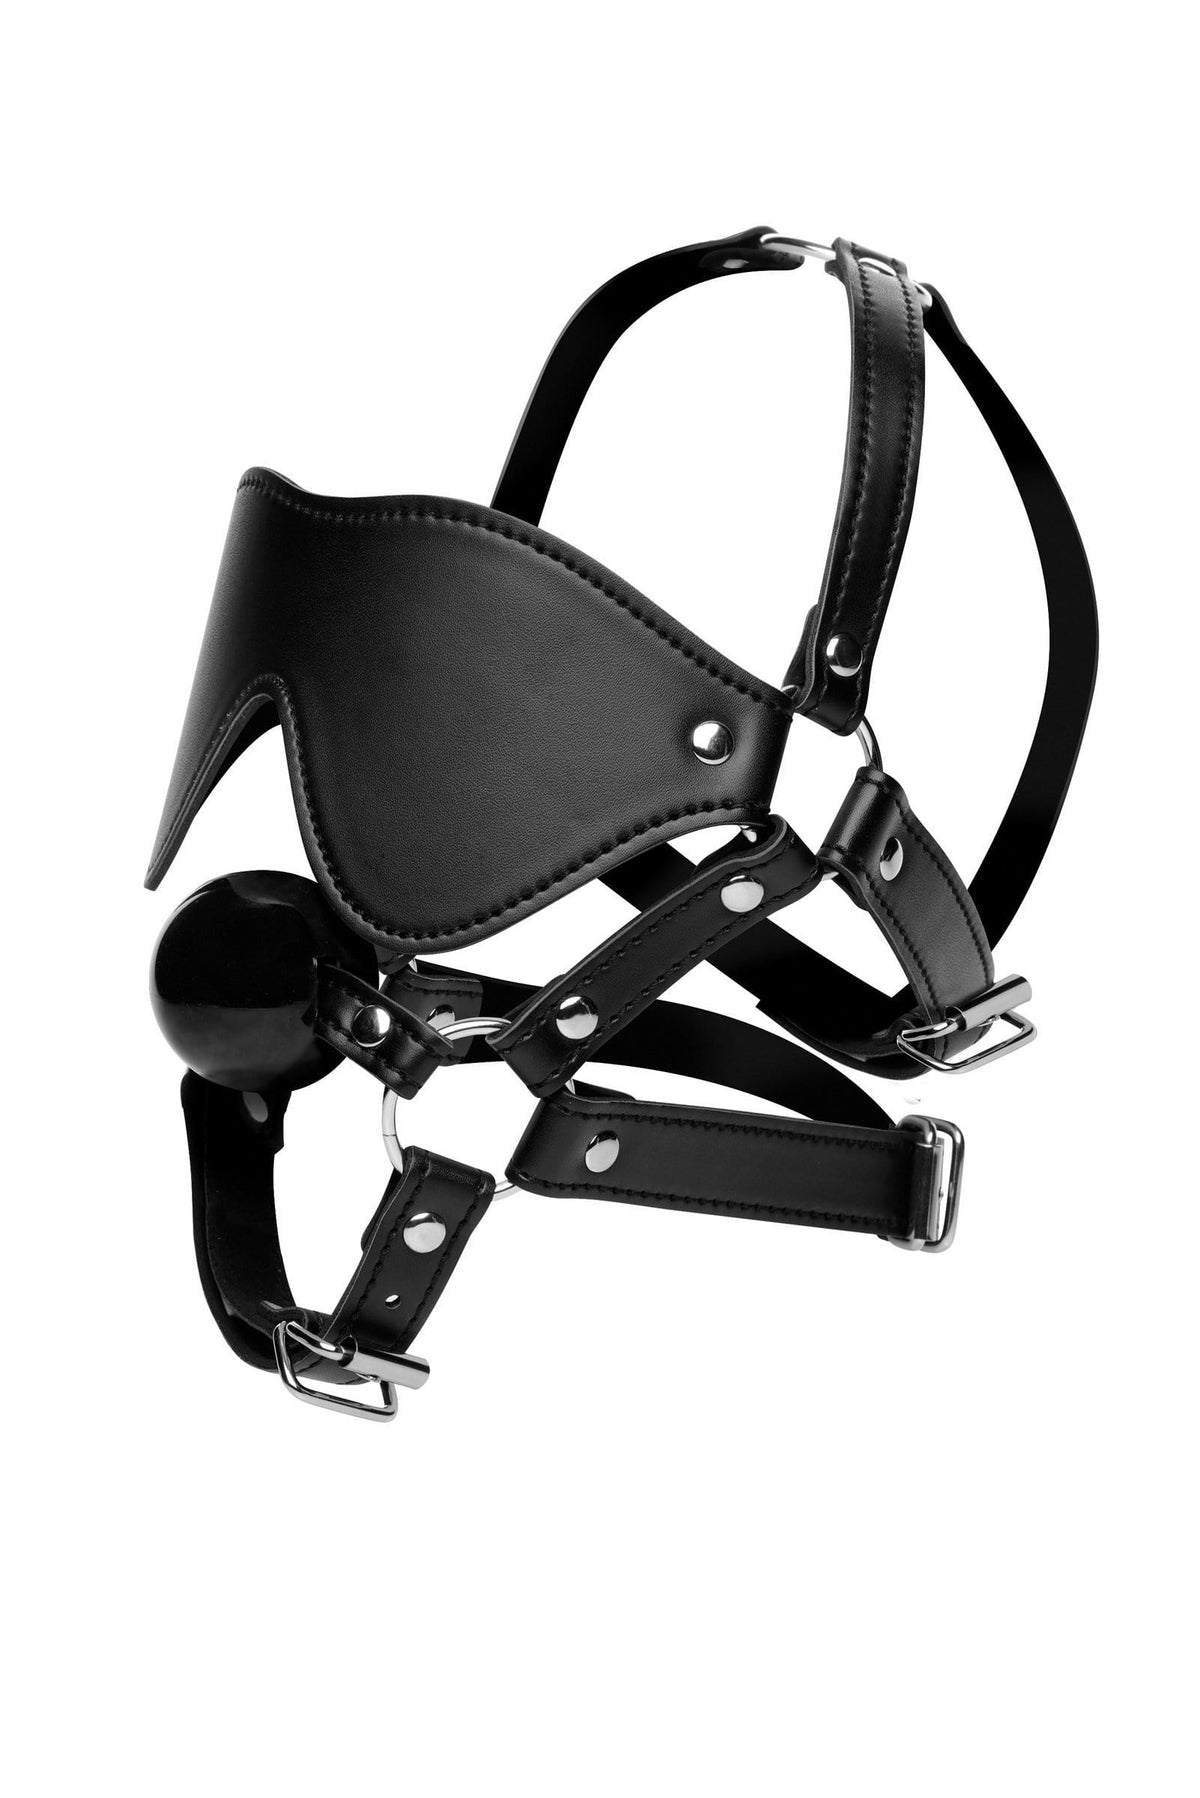 blindfold harness ball gag